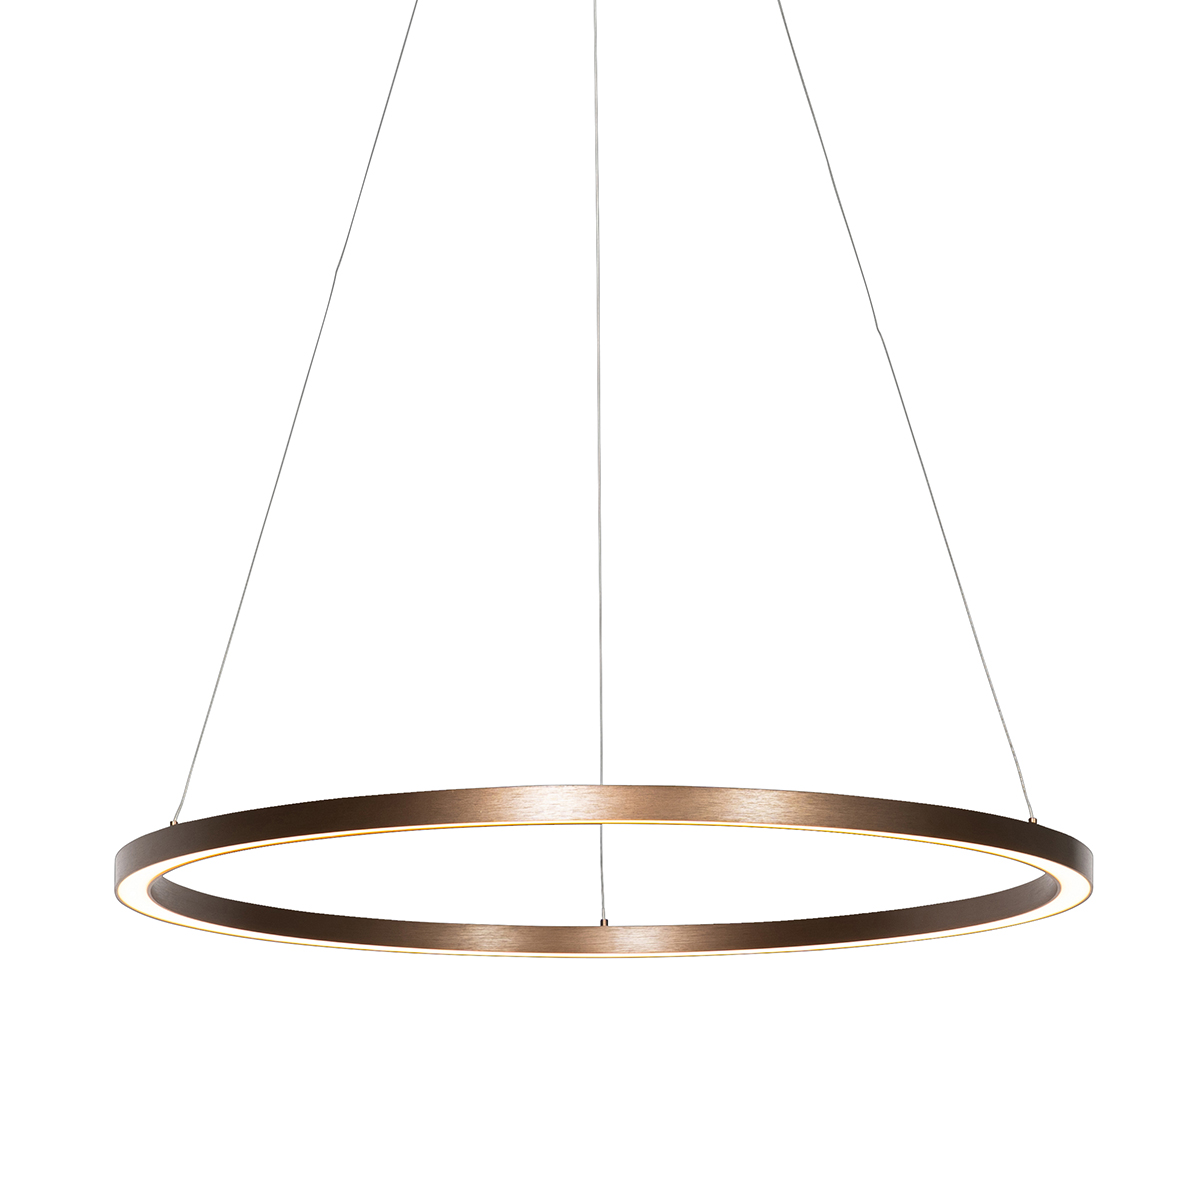 Lampada a sospensione in bronzo 80 cm con LED dimmerabile in 3 fasi - Girello